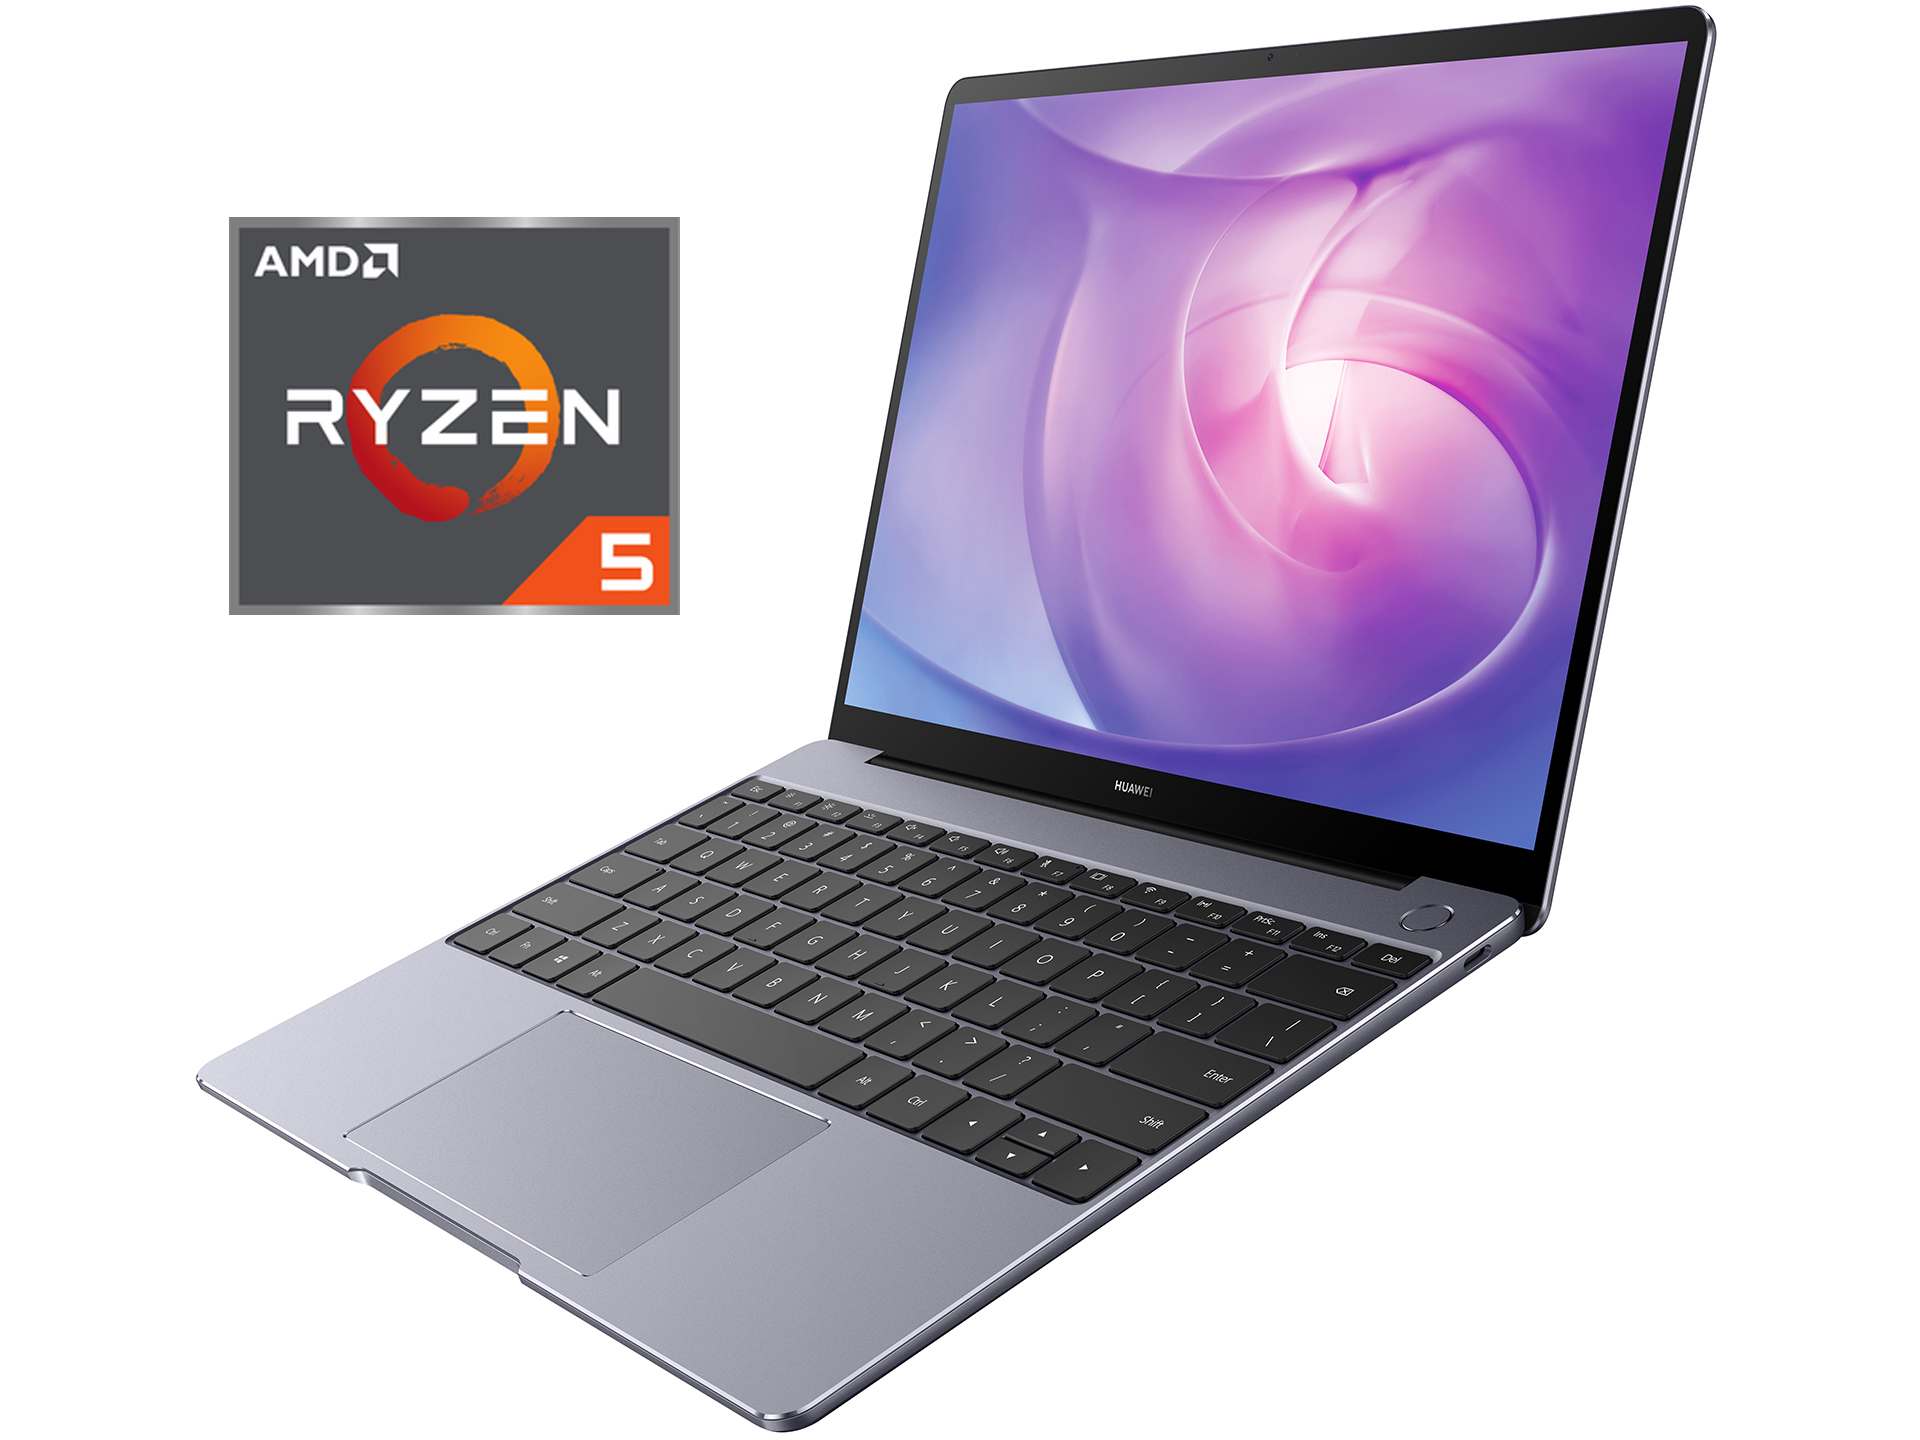 Huawei lanza la nueva MateBook 13 con chipset AMD Ryzen 5 3500U